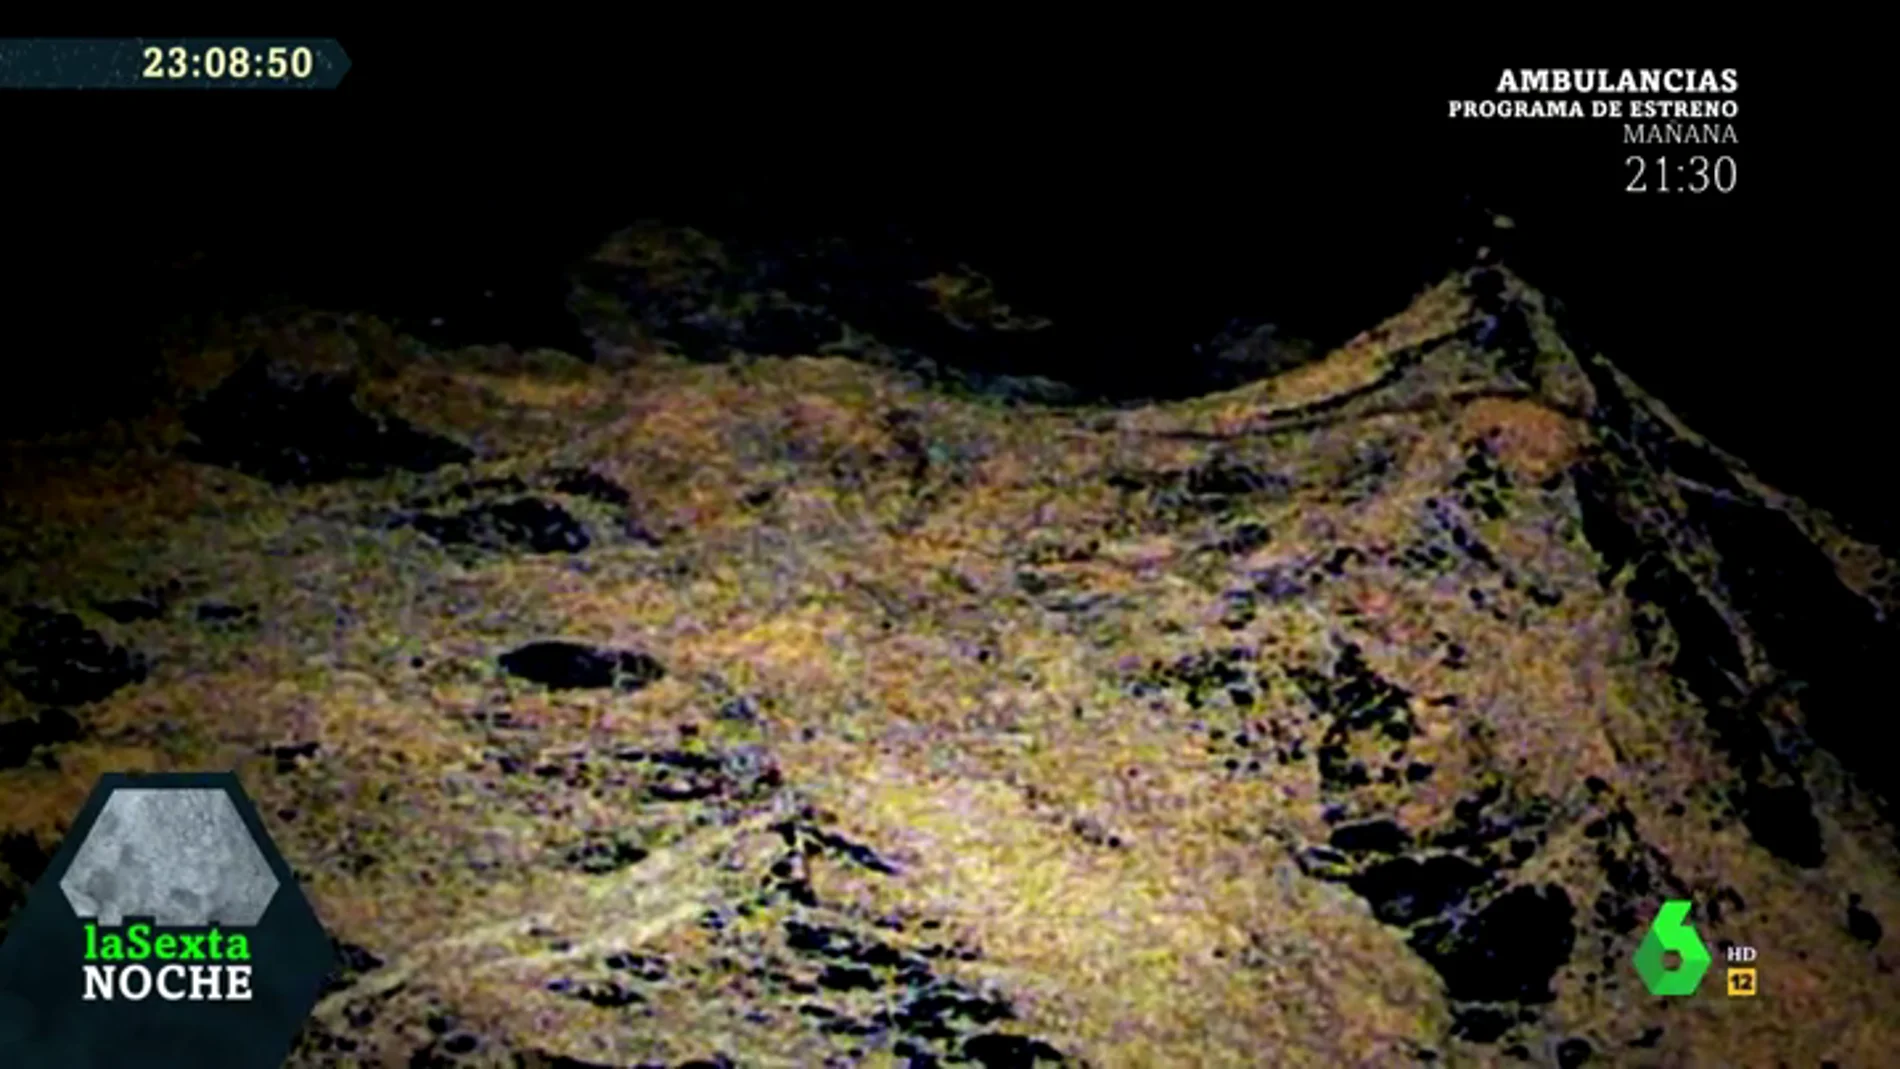 LaSexta Noche accede a imágenes inéditas del interior del Valle de los Caídos: los trabajos en los columbarios 